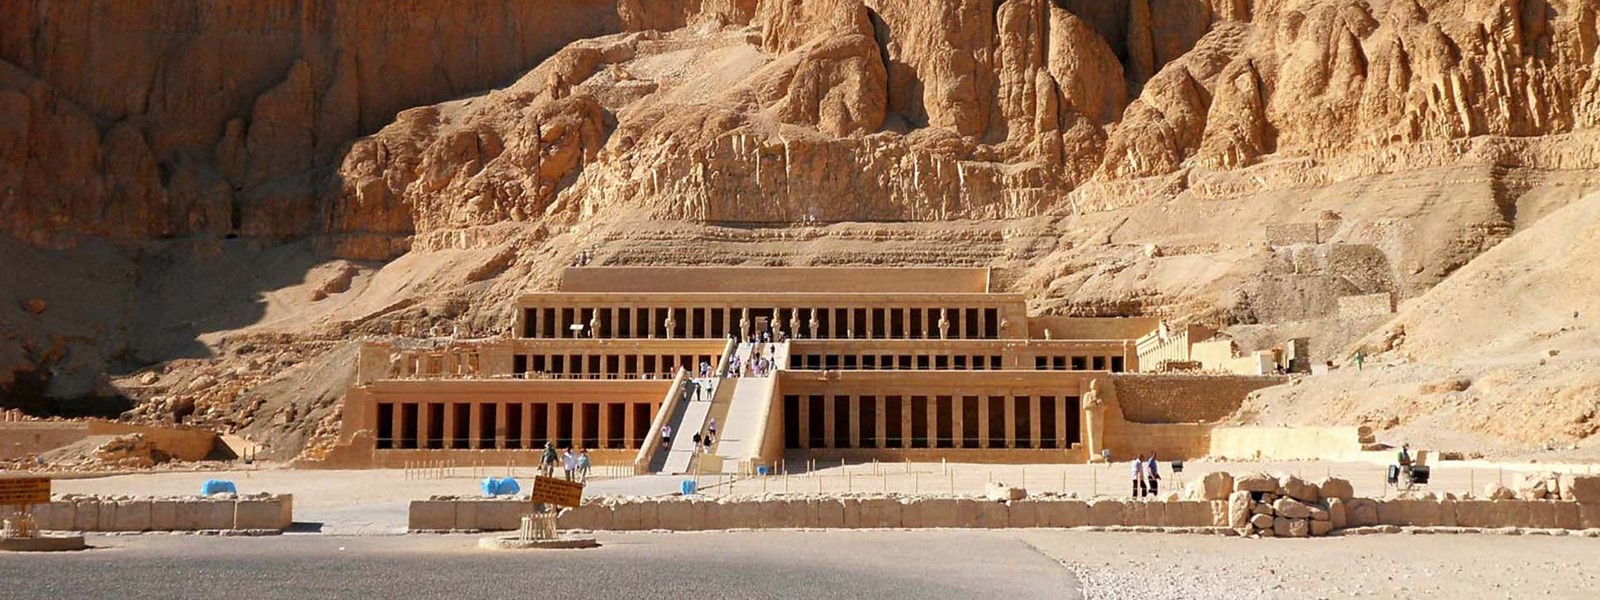 Egypt Luxor Hatshepsut Temple_3c0c1_lg.jpg Banner